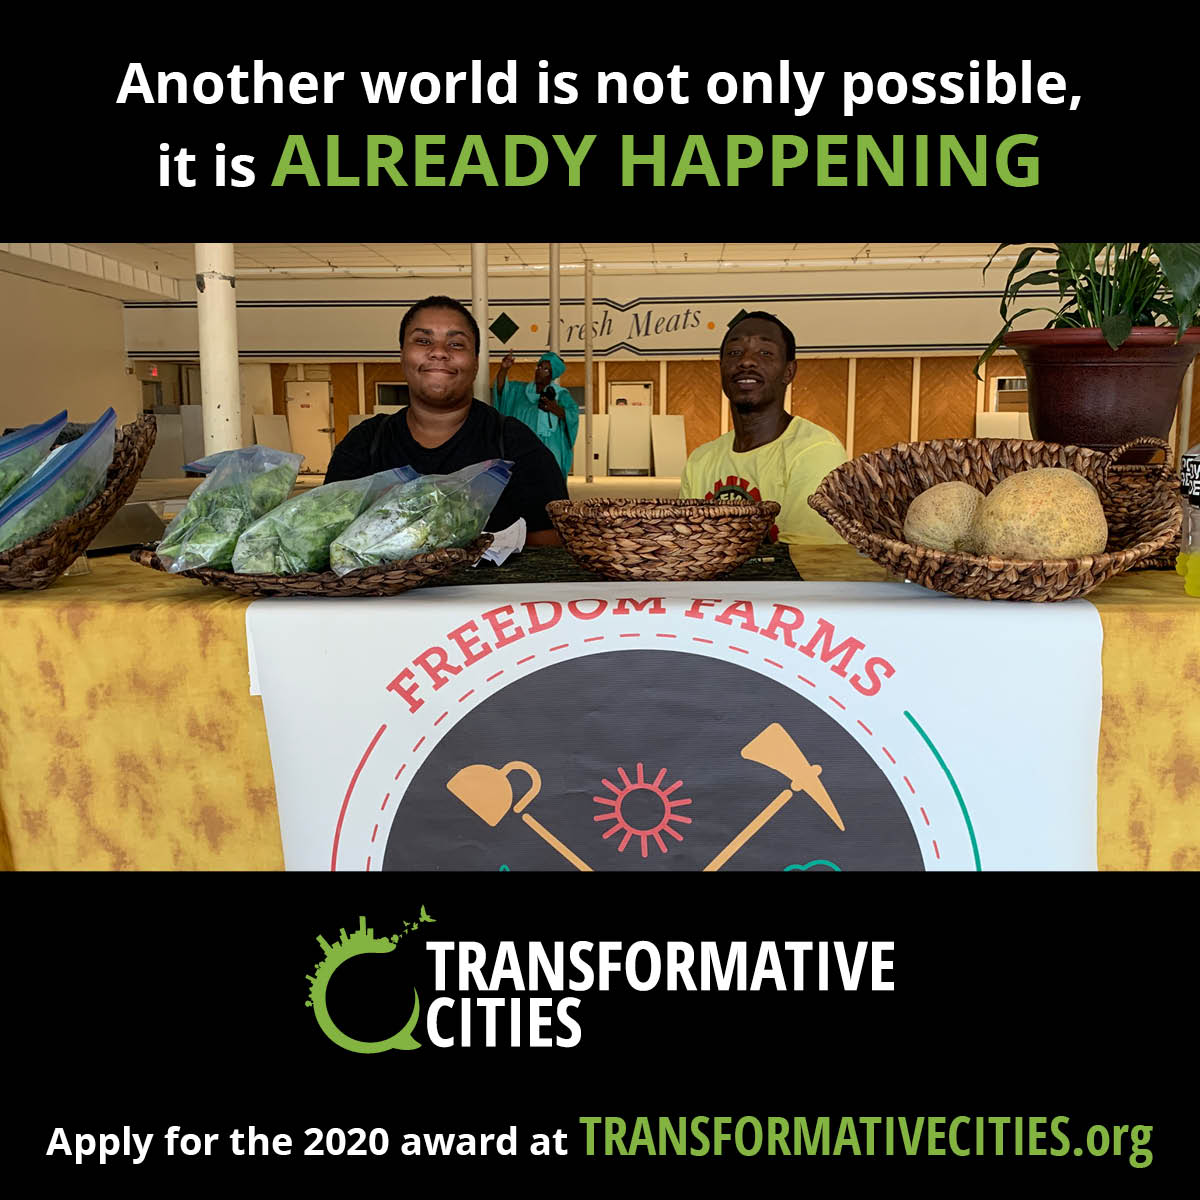 Appel prolongé pour le Transformative Cities Award 2020